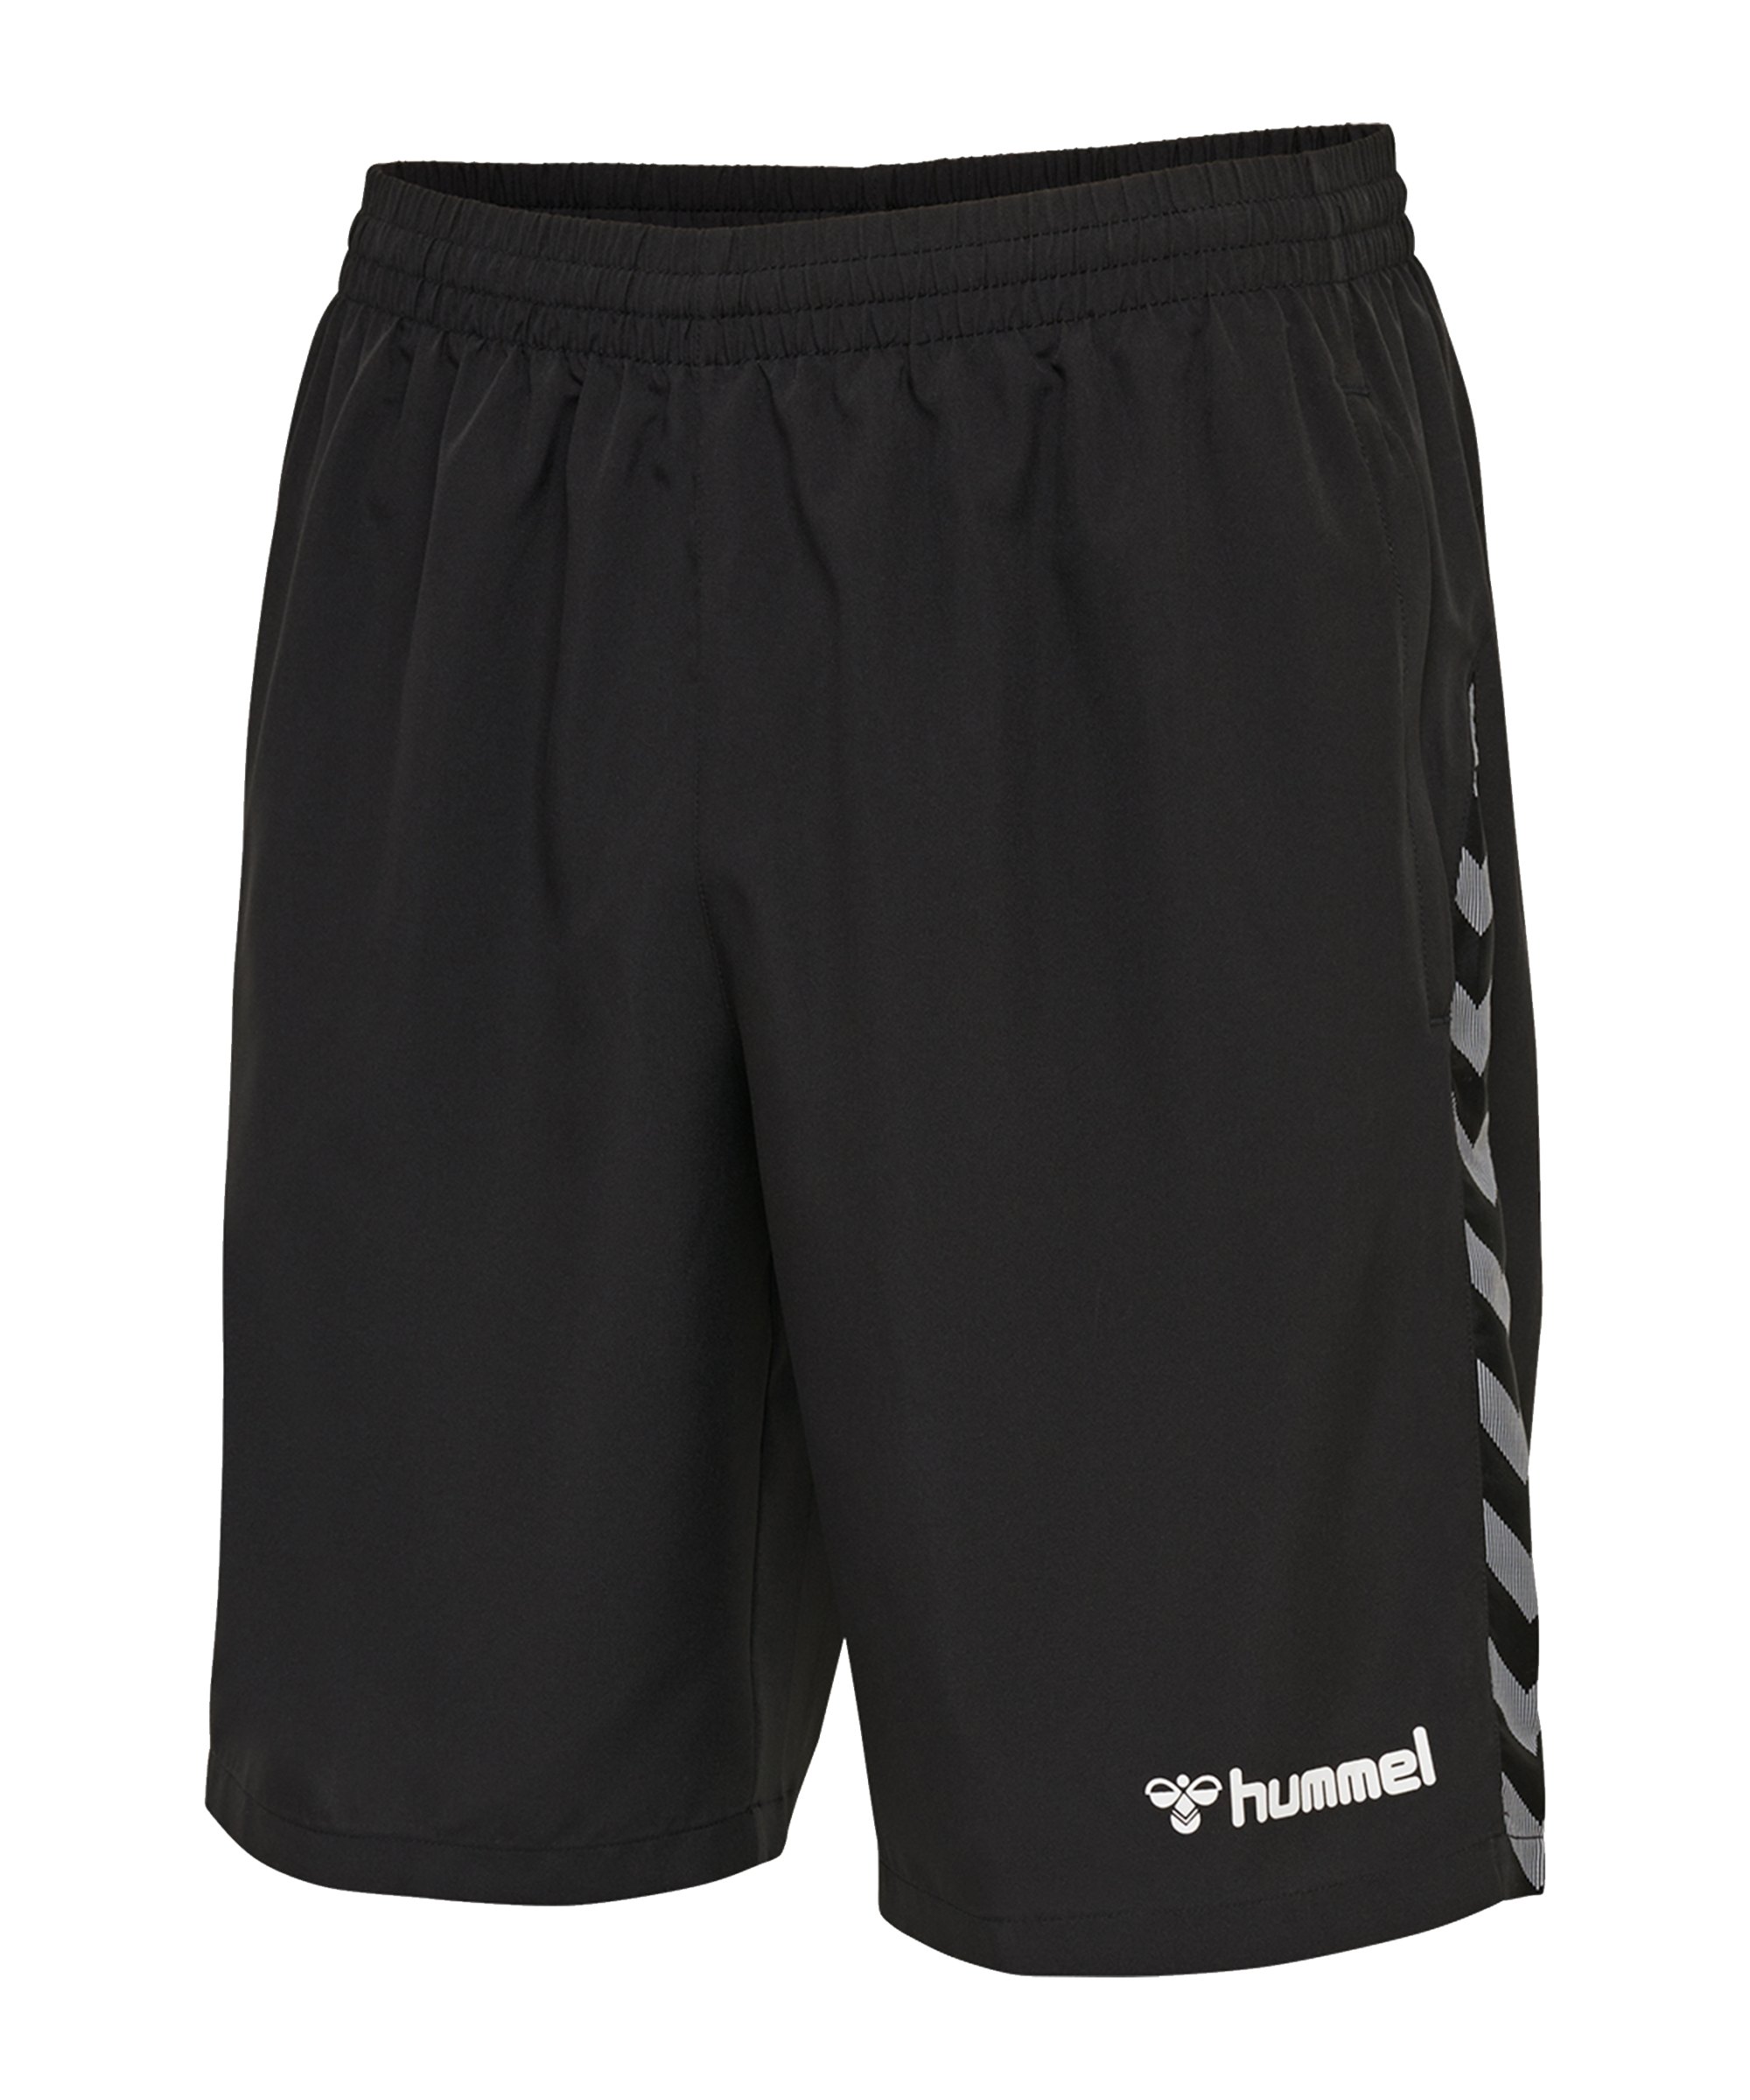 Hummel Authentic Training Shorts F2114 - schwarz